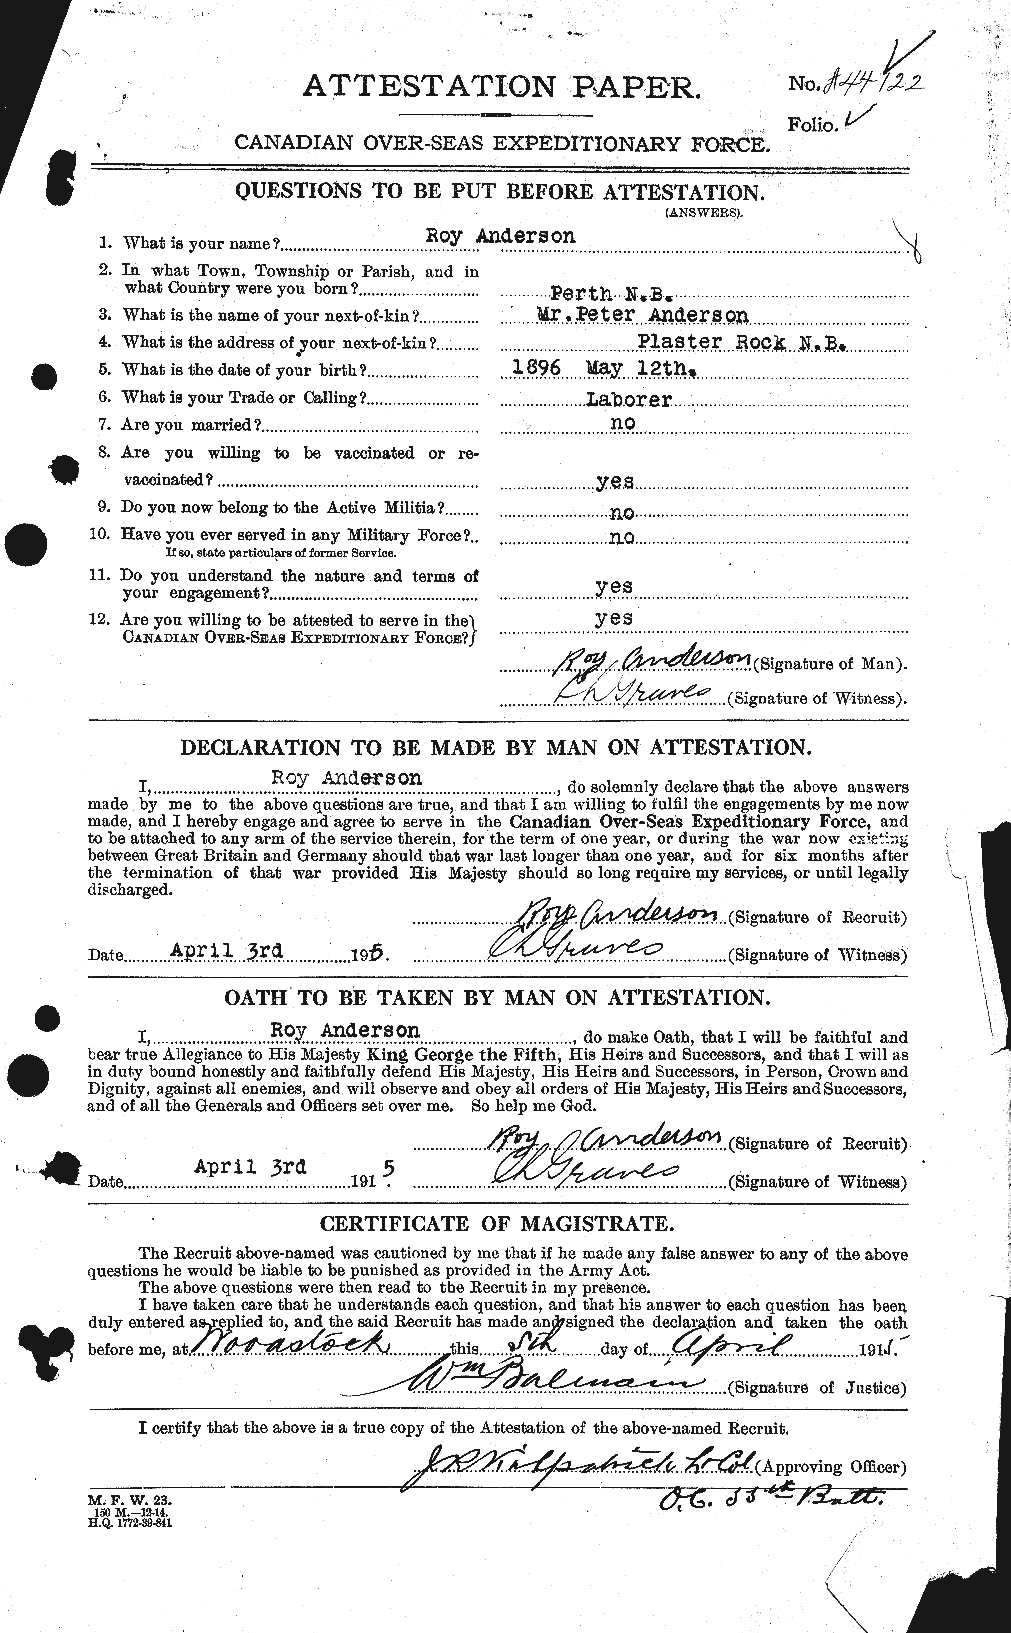 Dossiers du Personnel de la Première Guerre mondiale - CEC 207201a